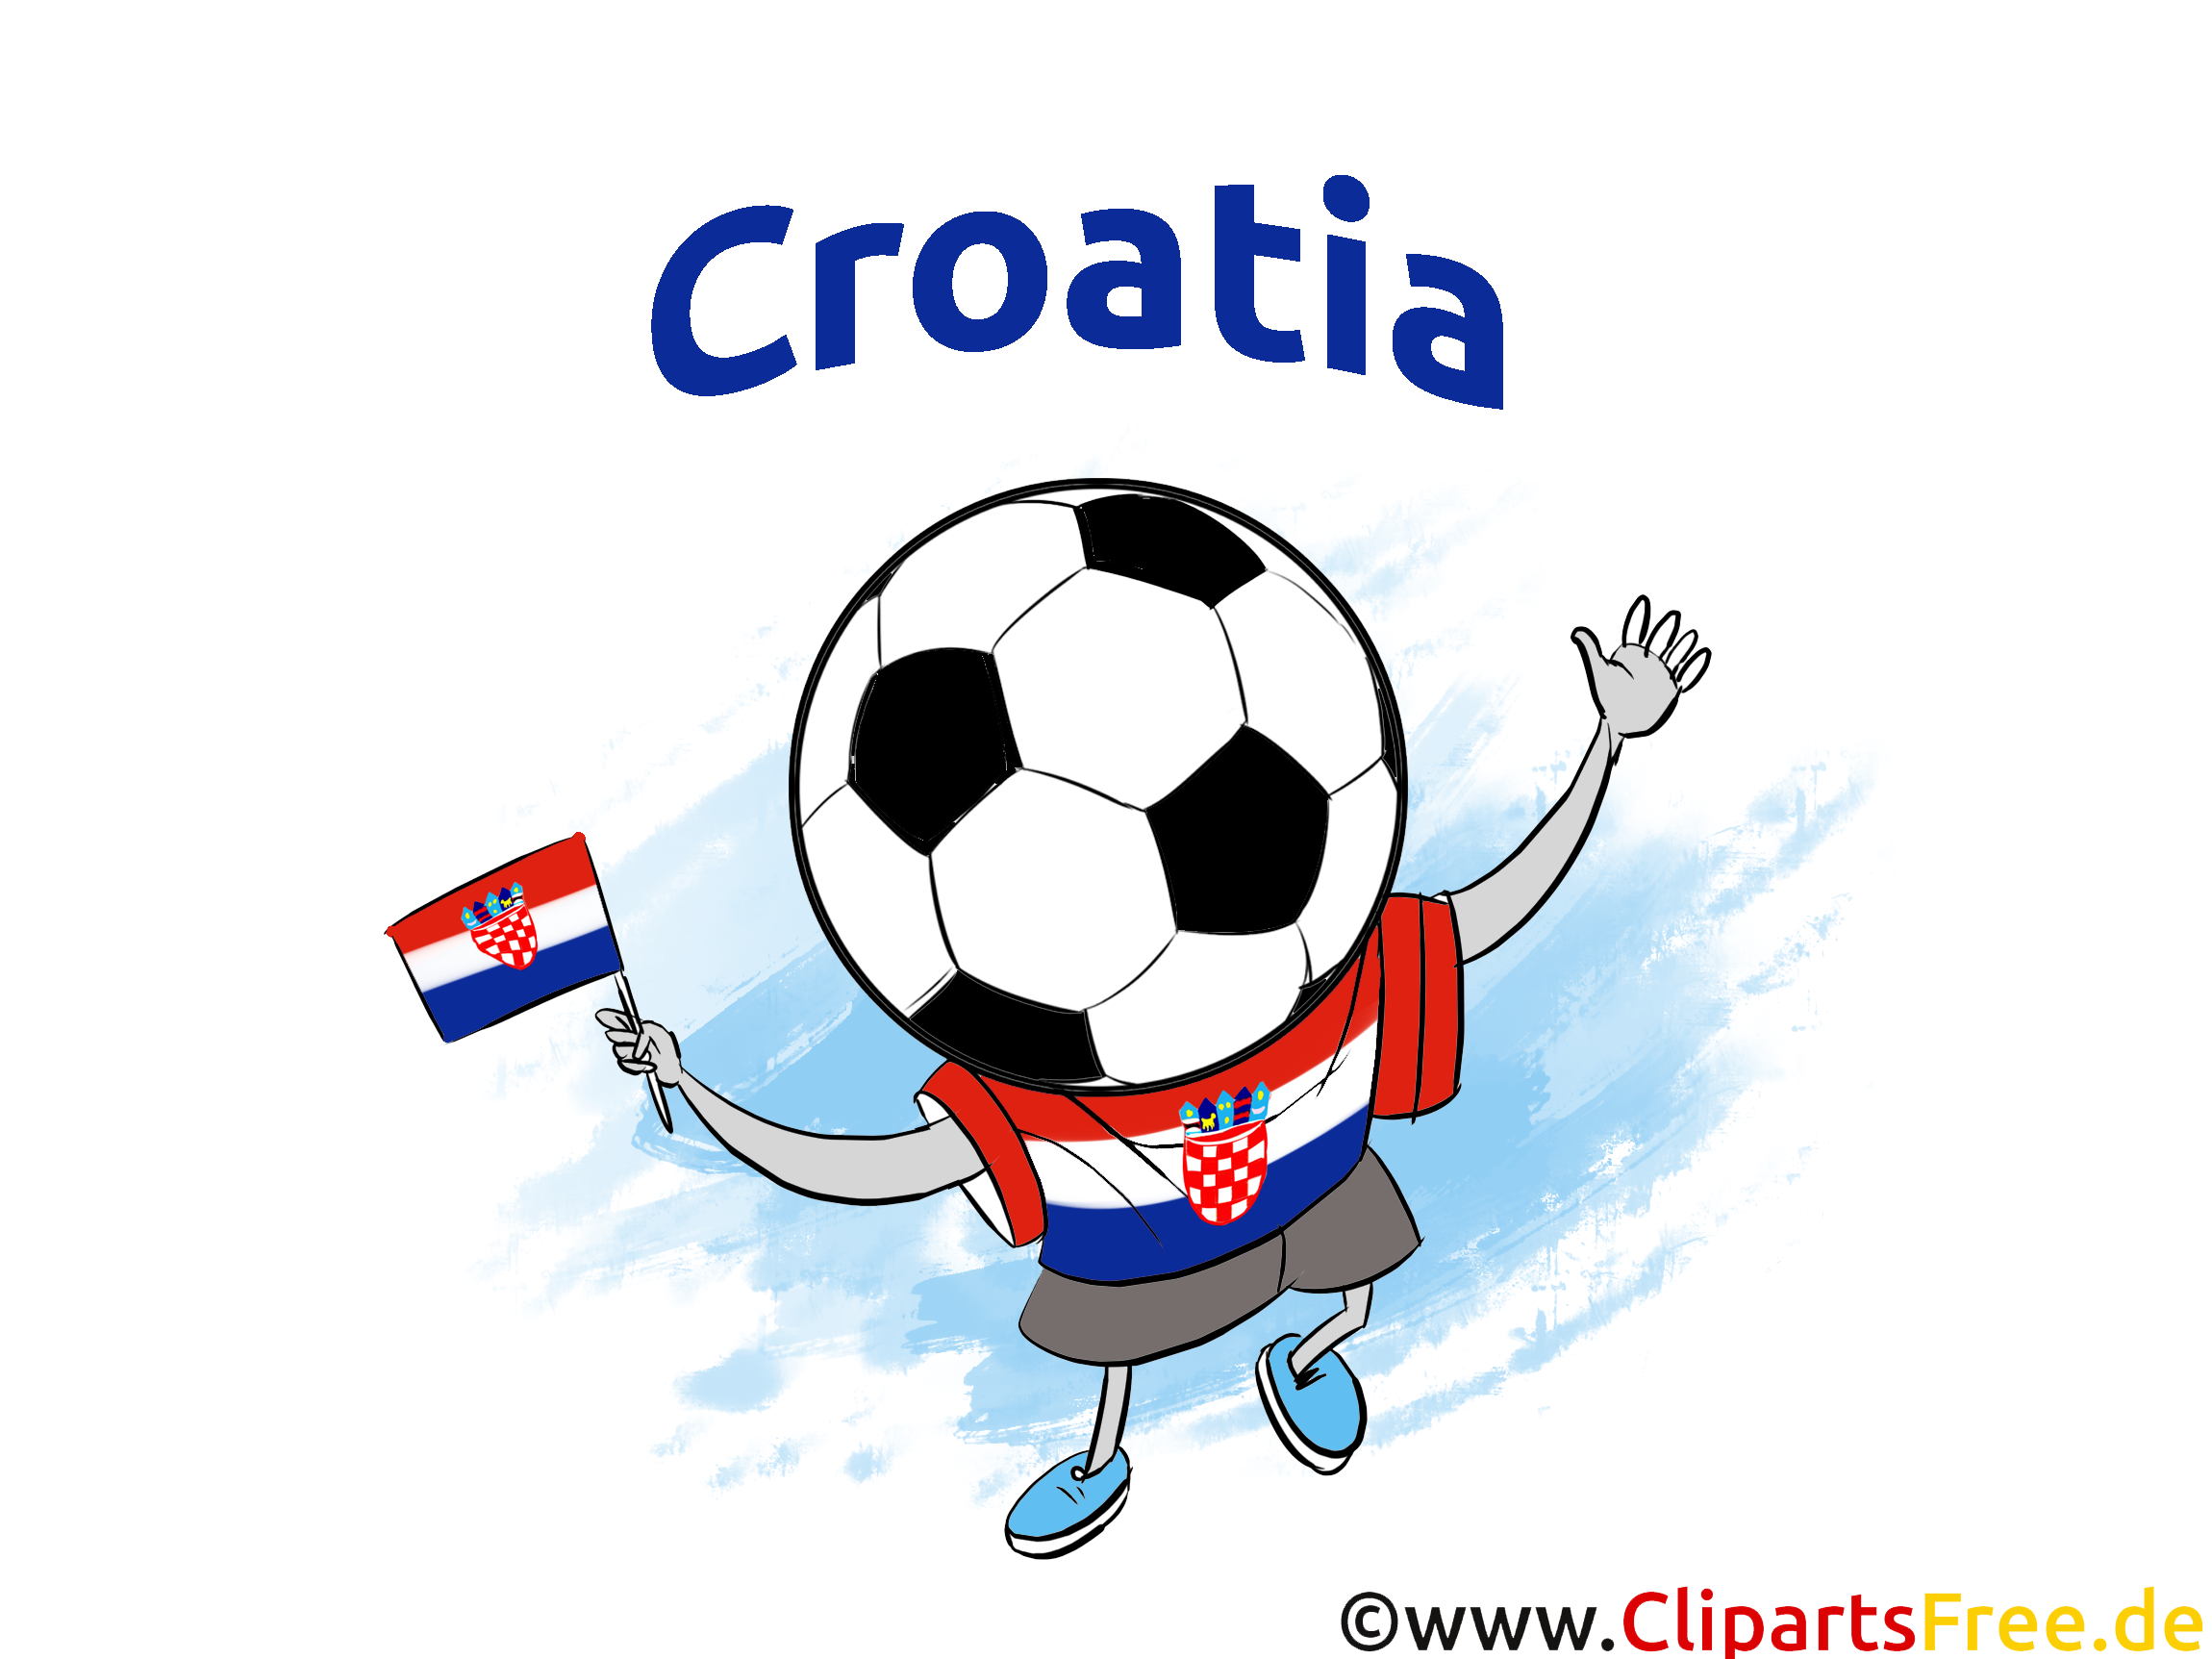 Football gratuitement télécharger Images Croatie